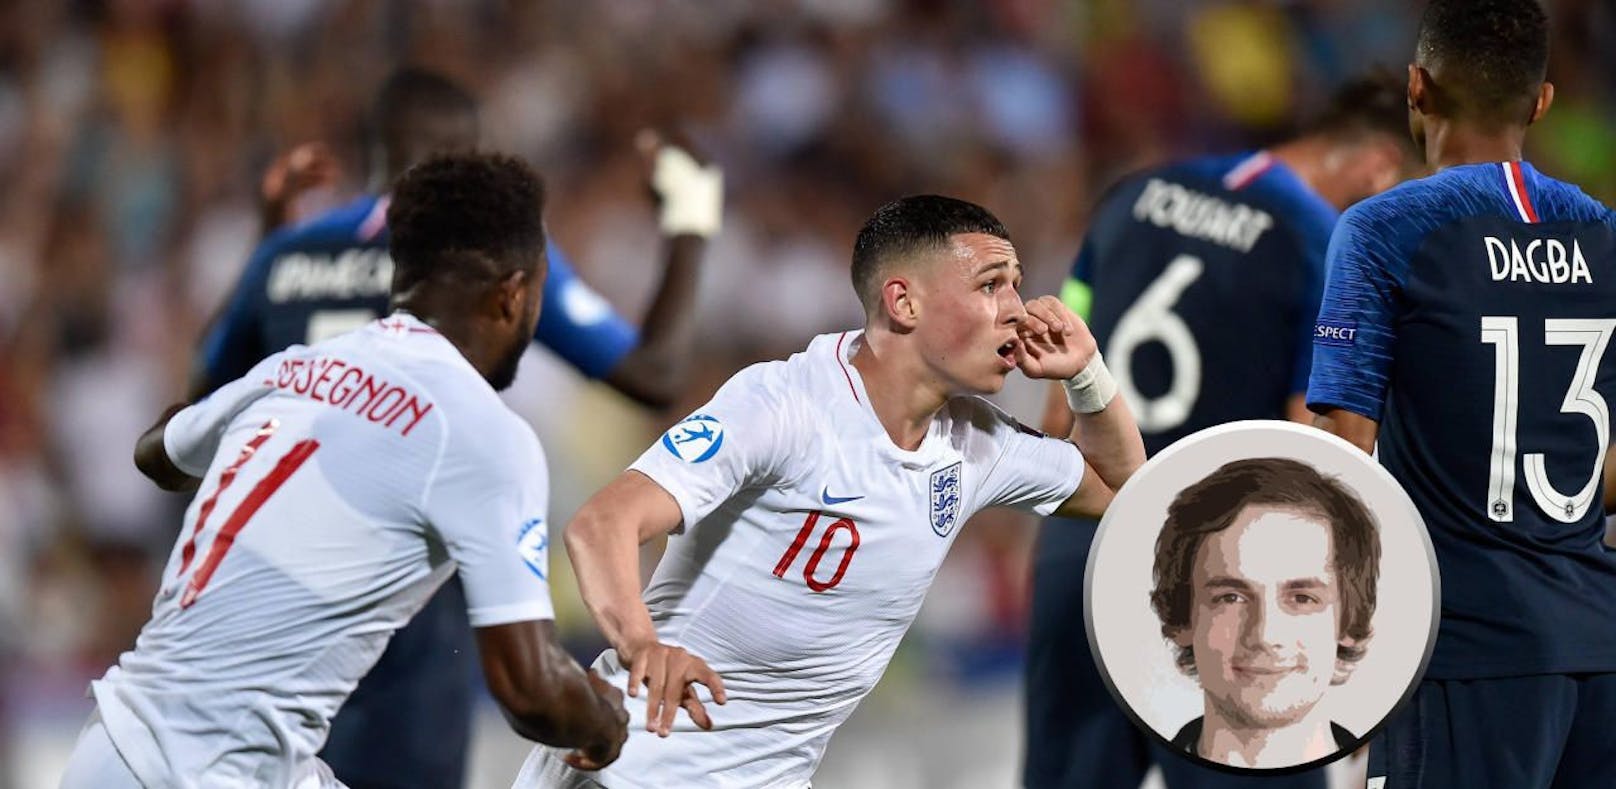 Frankreich besiegte England in einem dramatischen U21-Match. Leider ließ die Übertragung zu wünschen übrig.